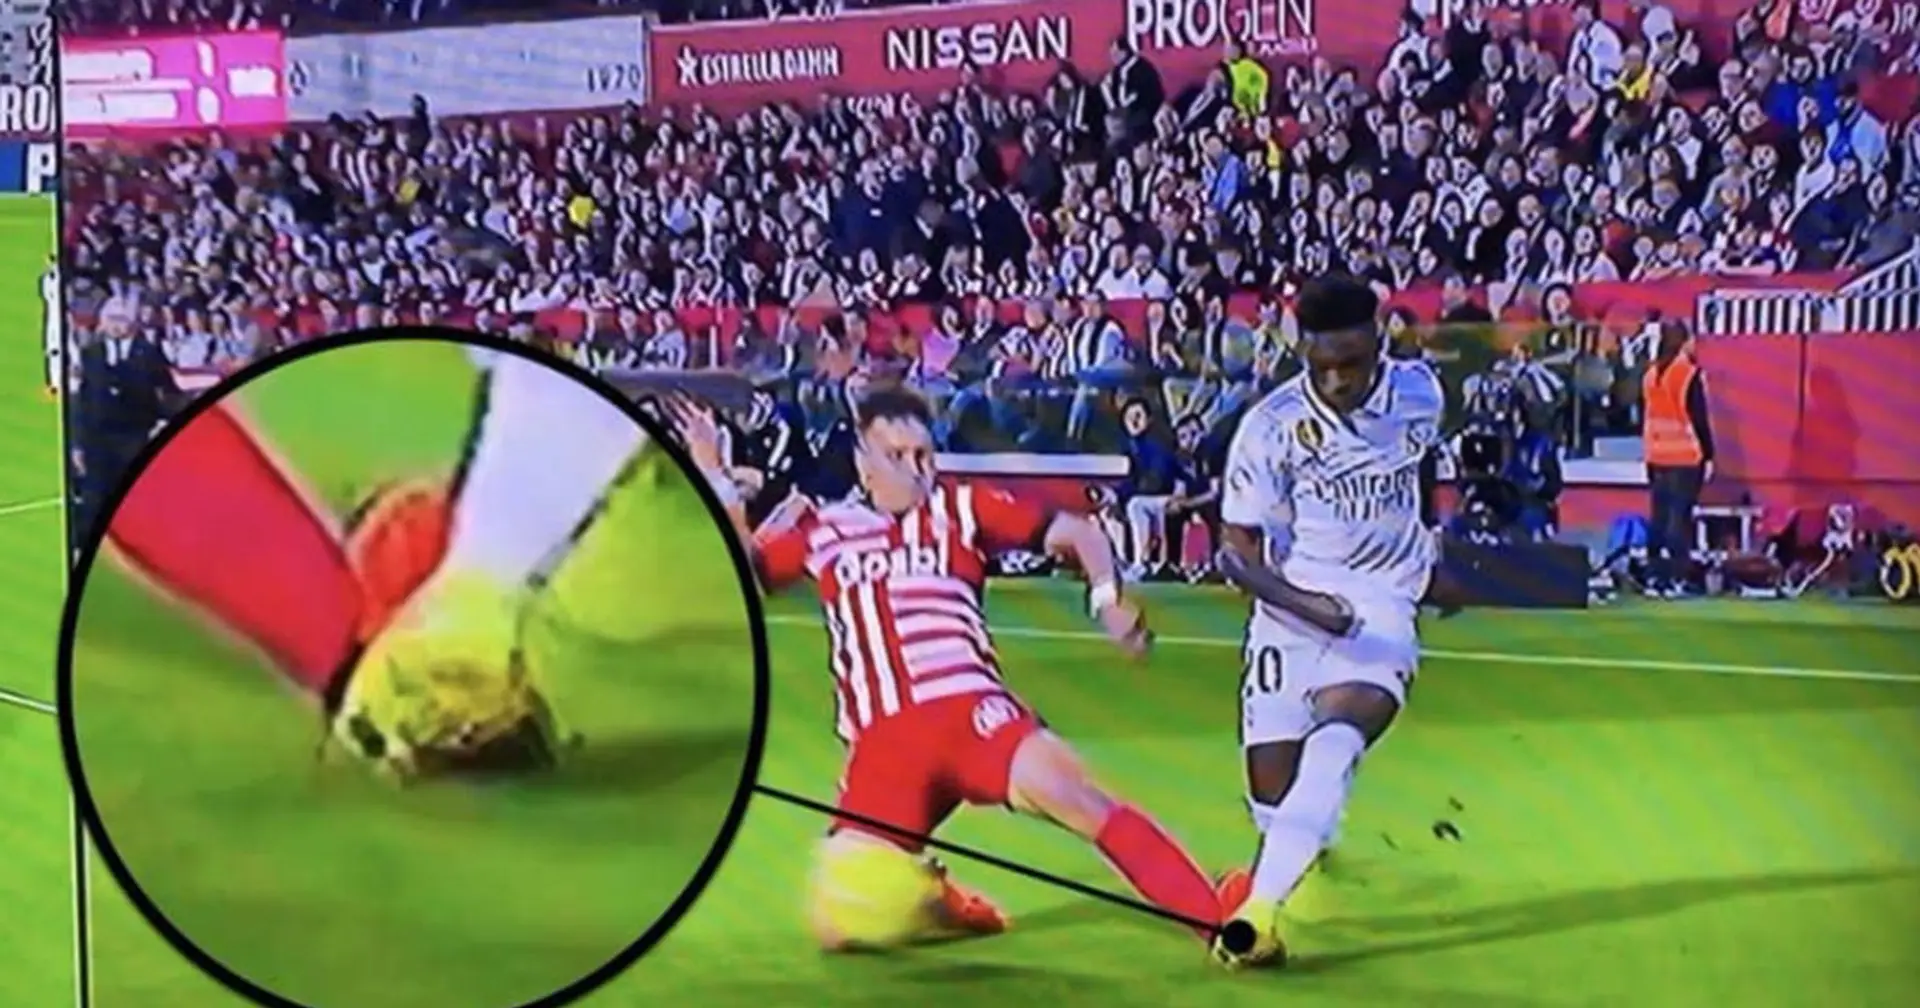 Kein Elfmeter für Vinicius? Der umstrittenste Moment im Spiel gegen Girona